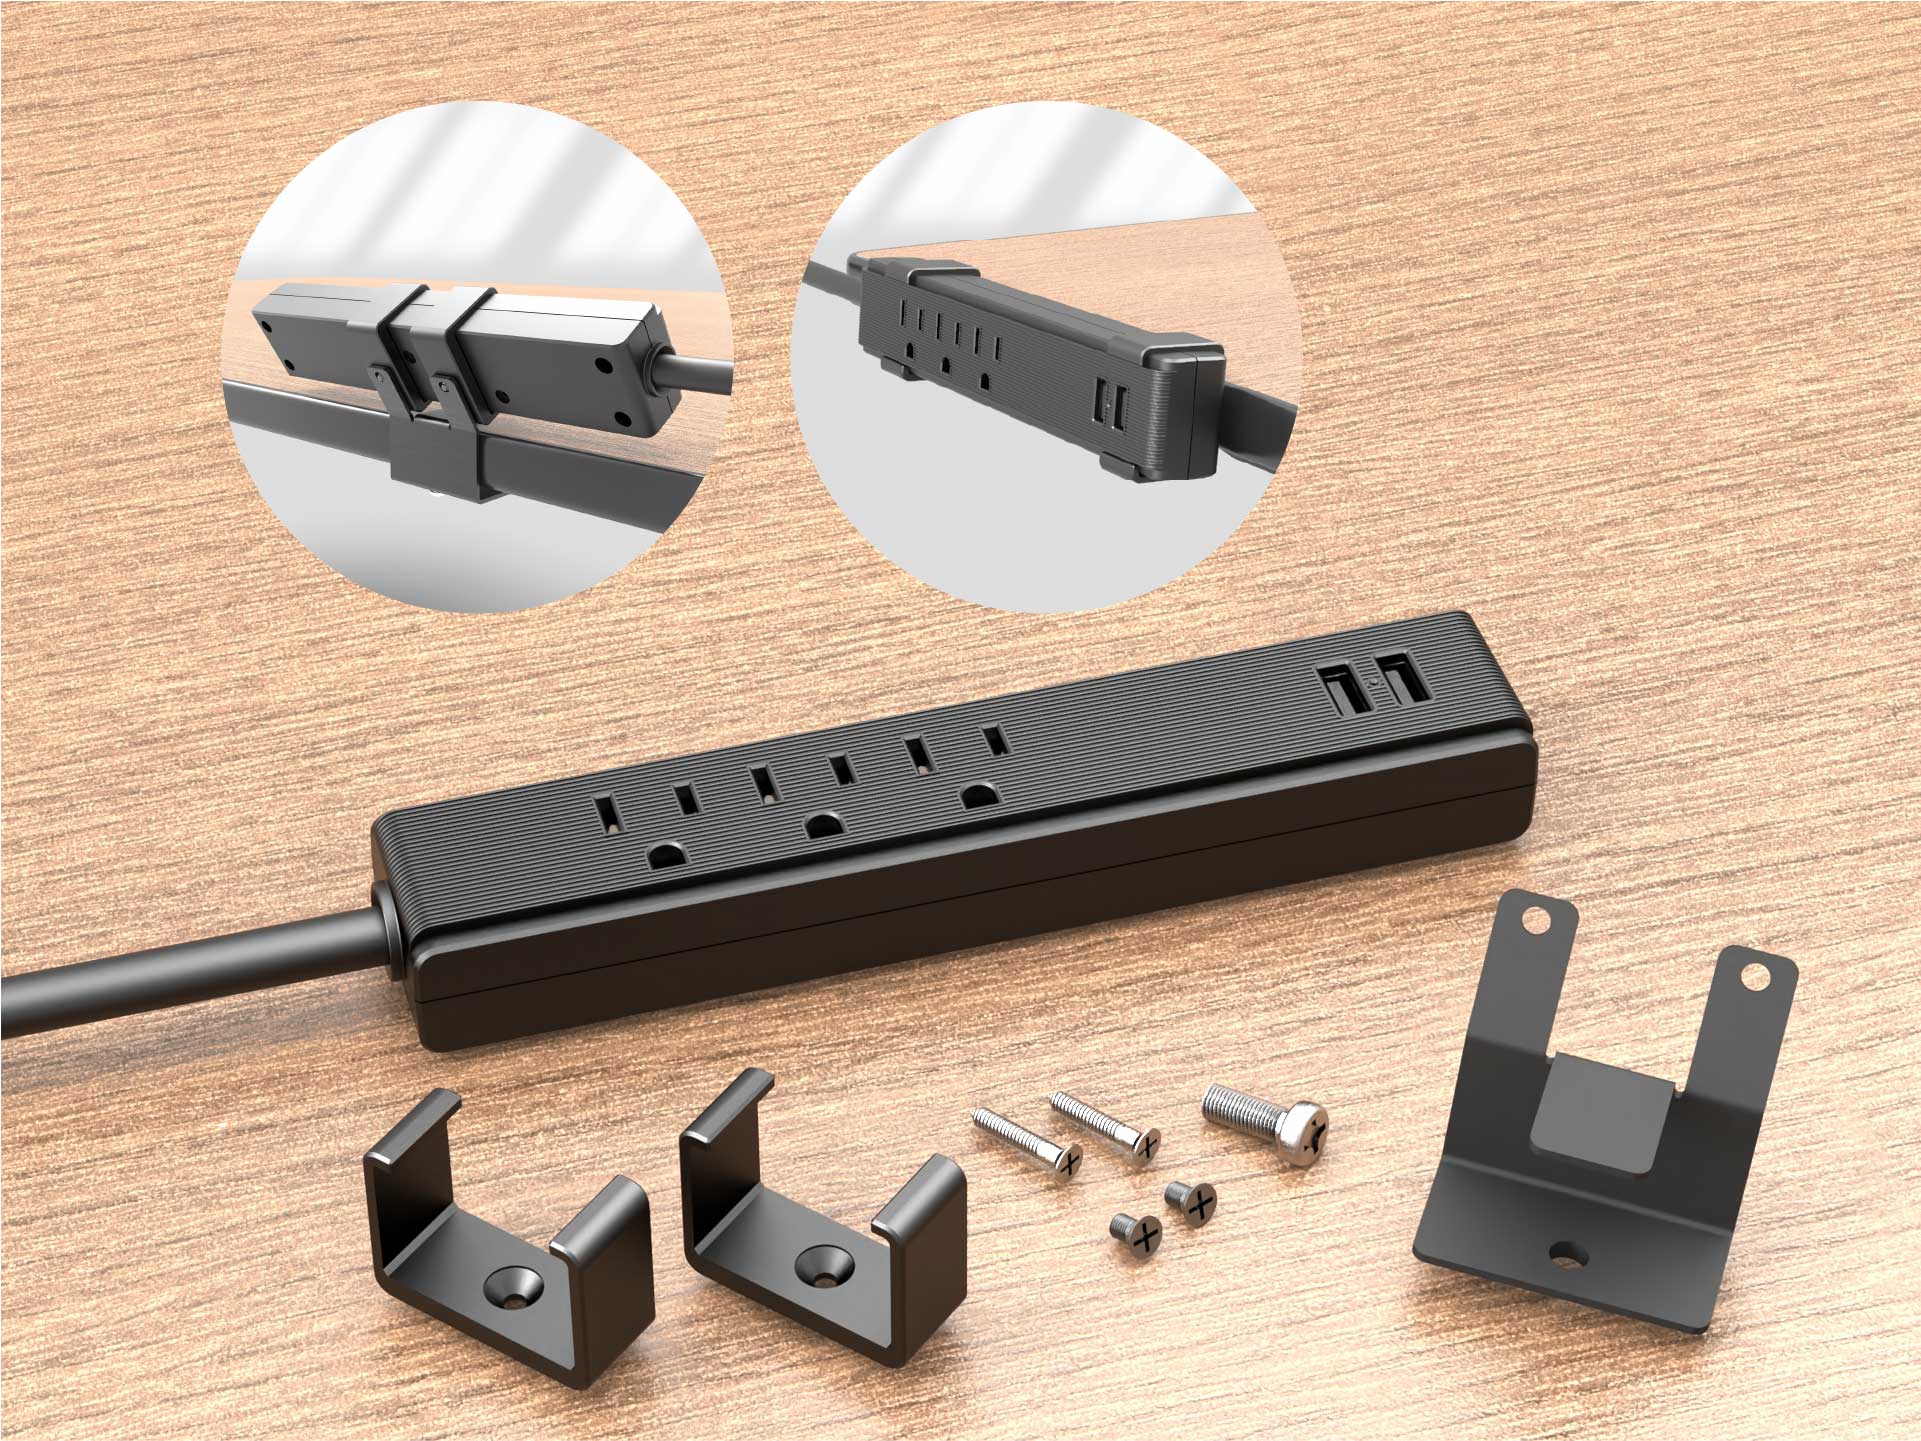 Möbelsteckdose mit Halterung, USB-Ladegerät, 2 Steckdosen 2P+Z (Schuko),  2xUSB (Typ A, 2,4A), Kabel 3x1,5mm2 - 1,4m, weiß - Elektrogeschäft Reeline